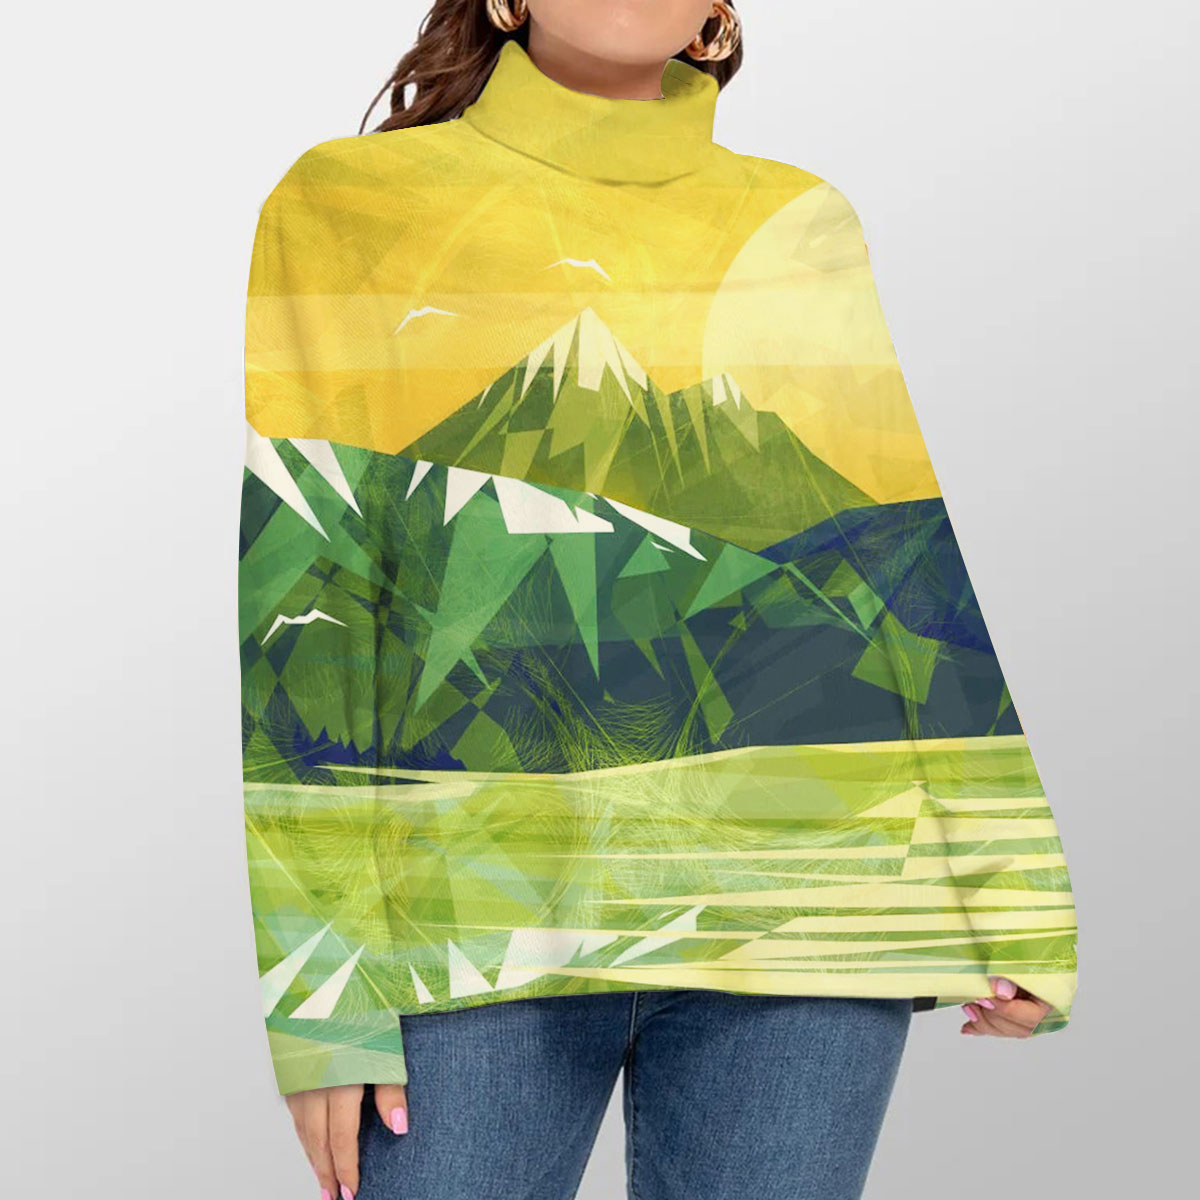 Green Mountain Landscape Turtleneck Sweater